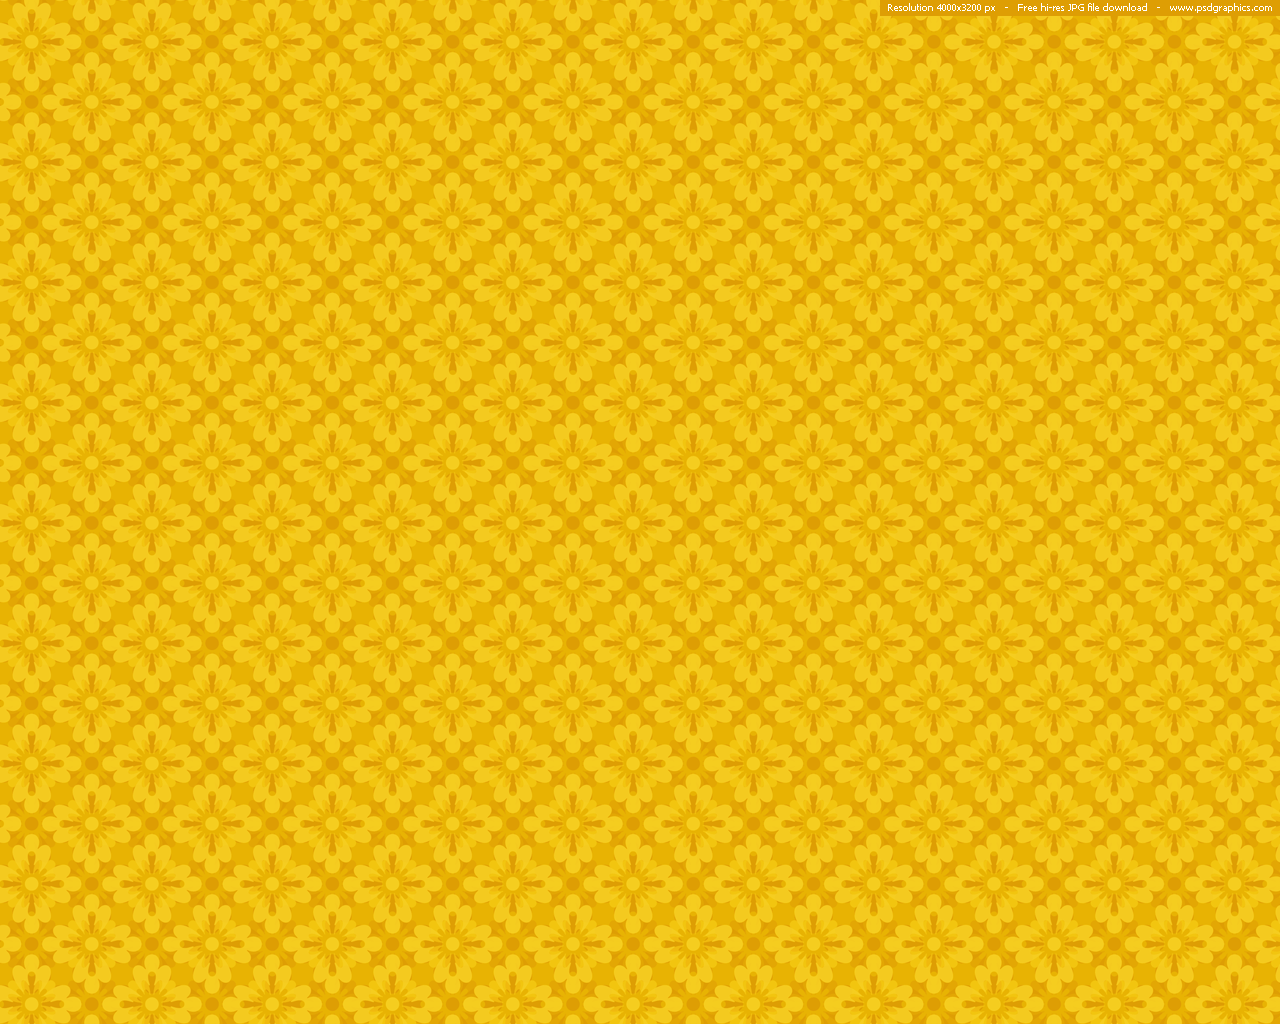  Yellow pattern background 